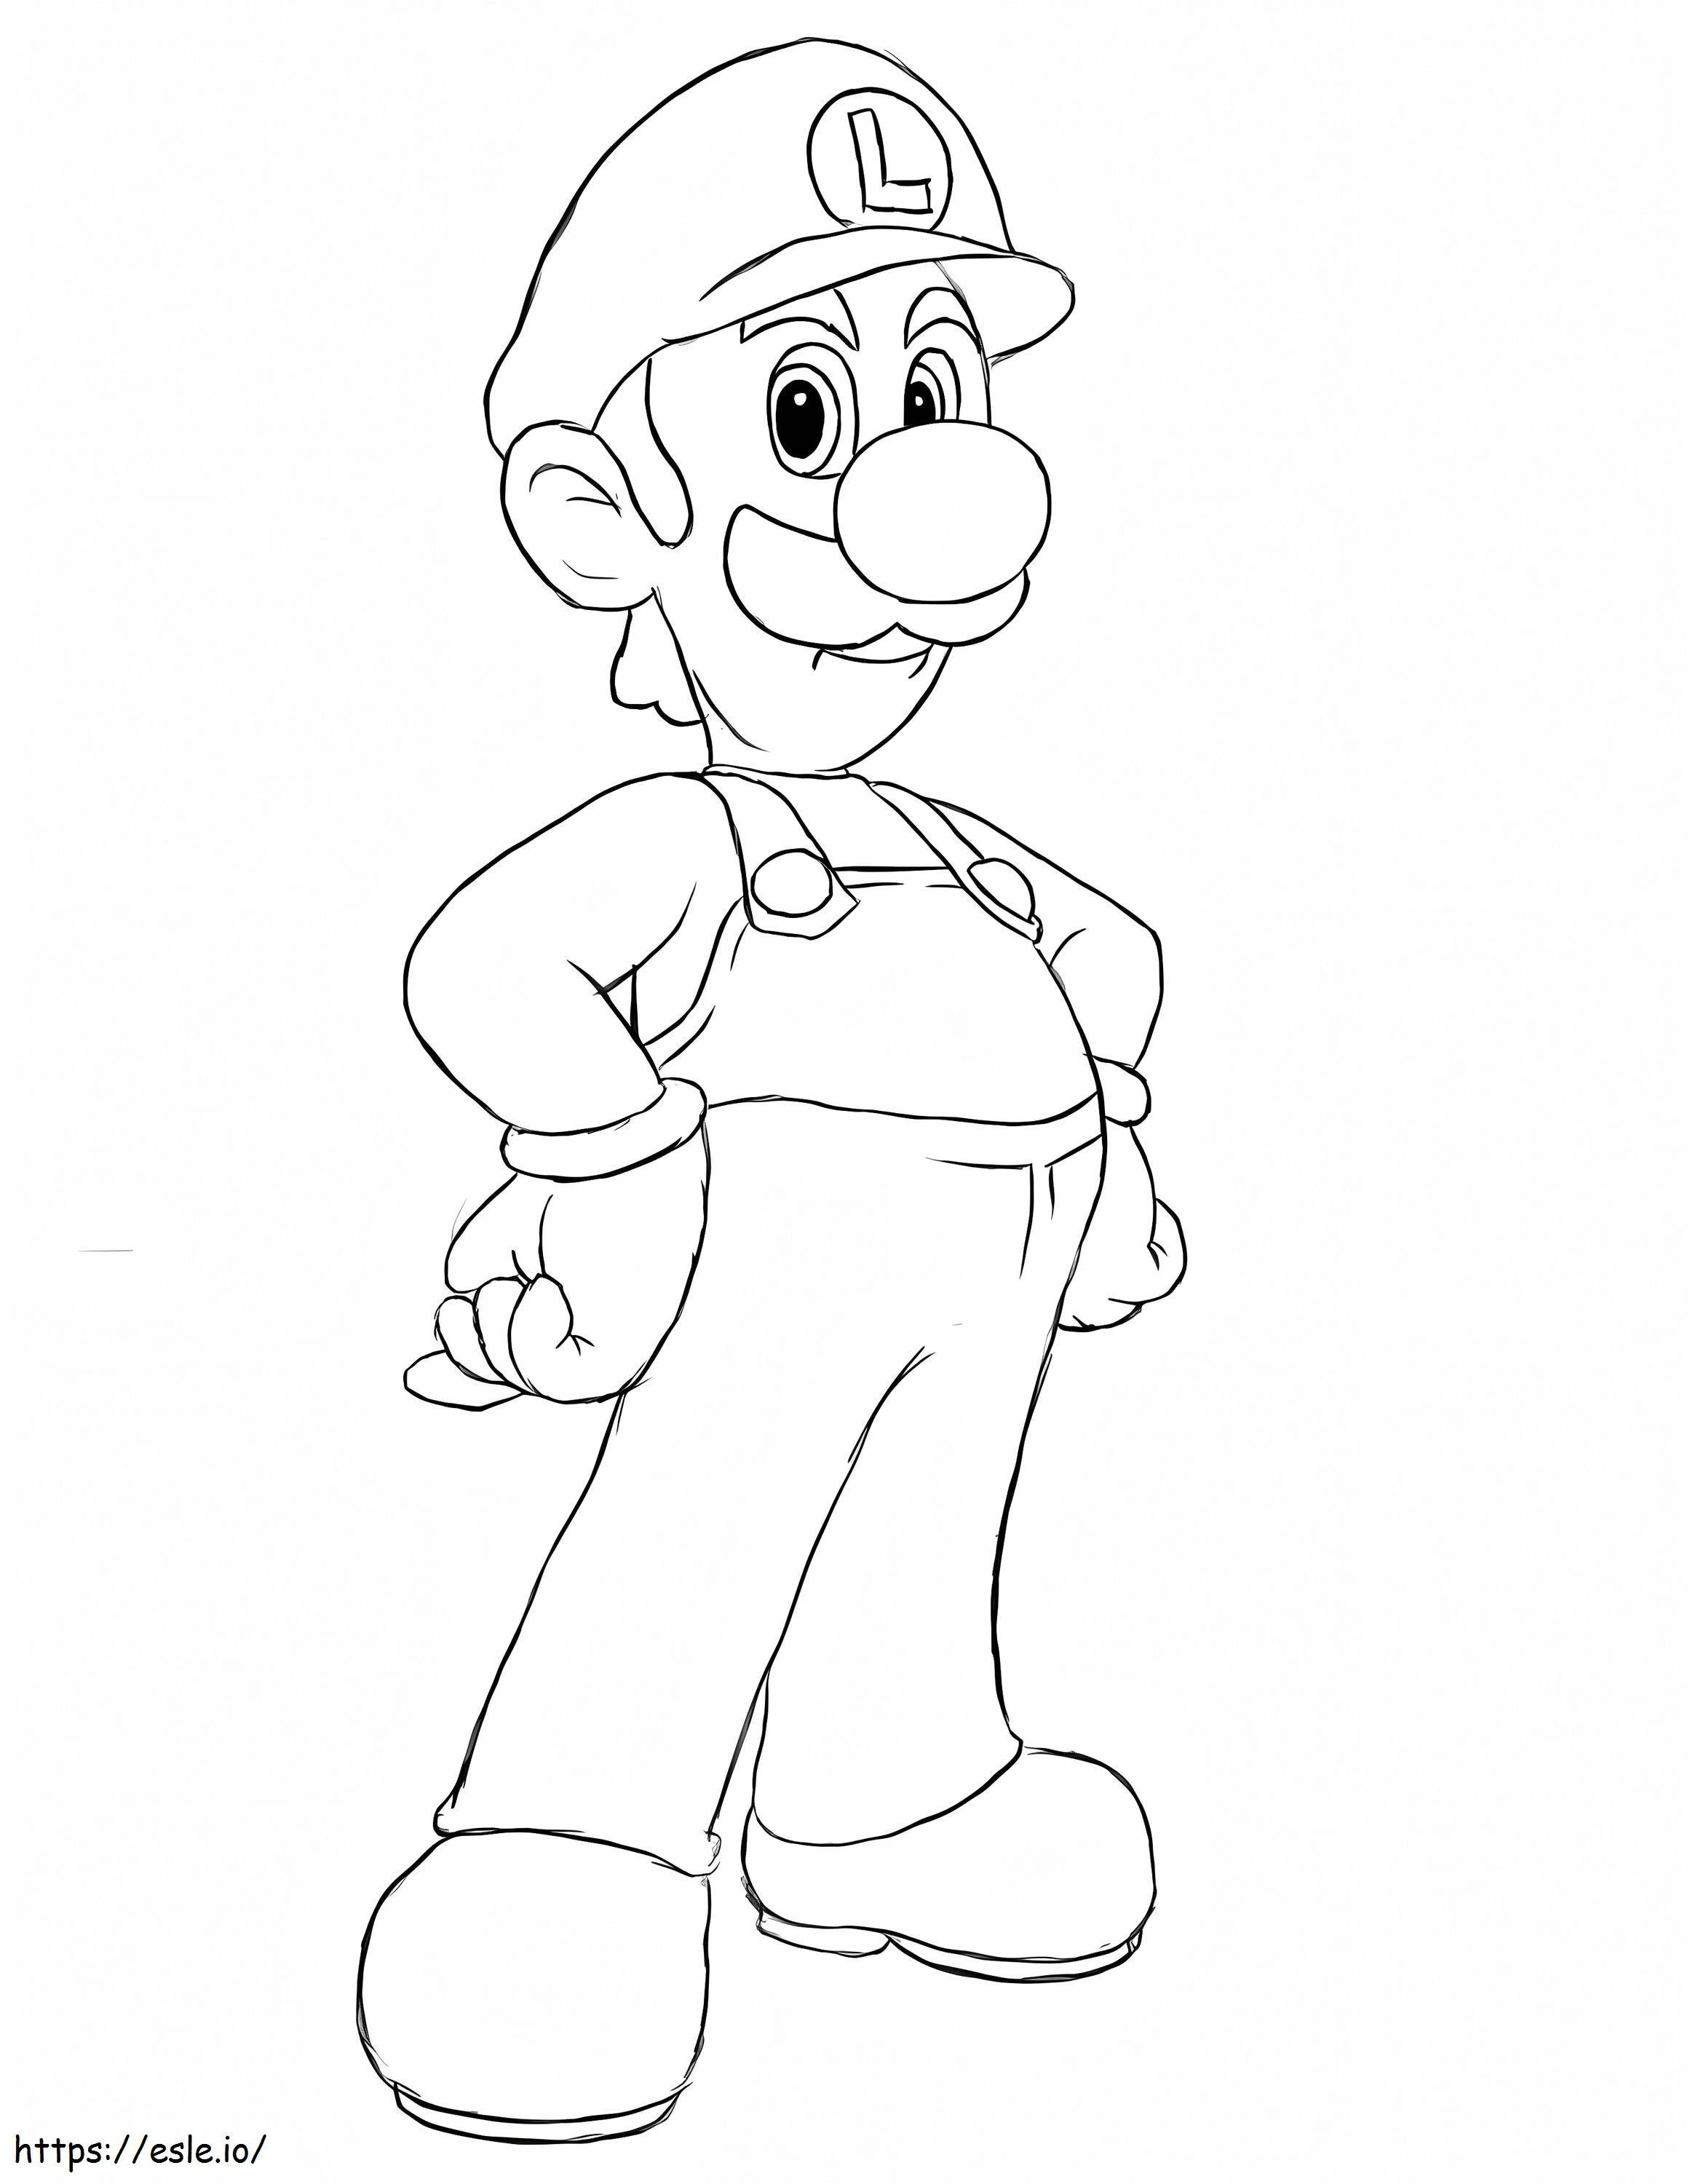 Coloriage Louis De Super Mario 4 à imprimer dessin